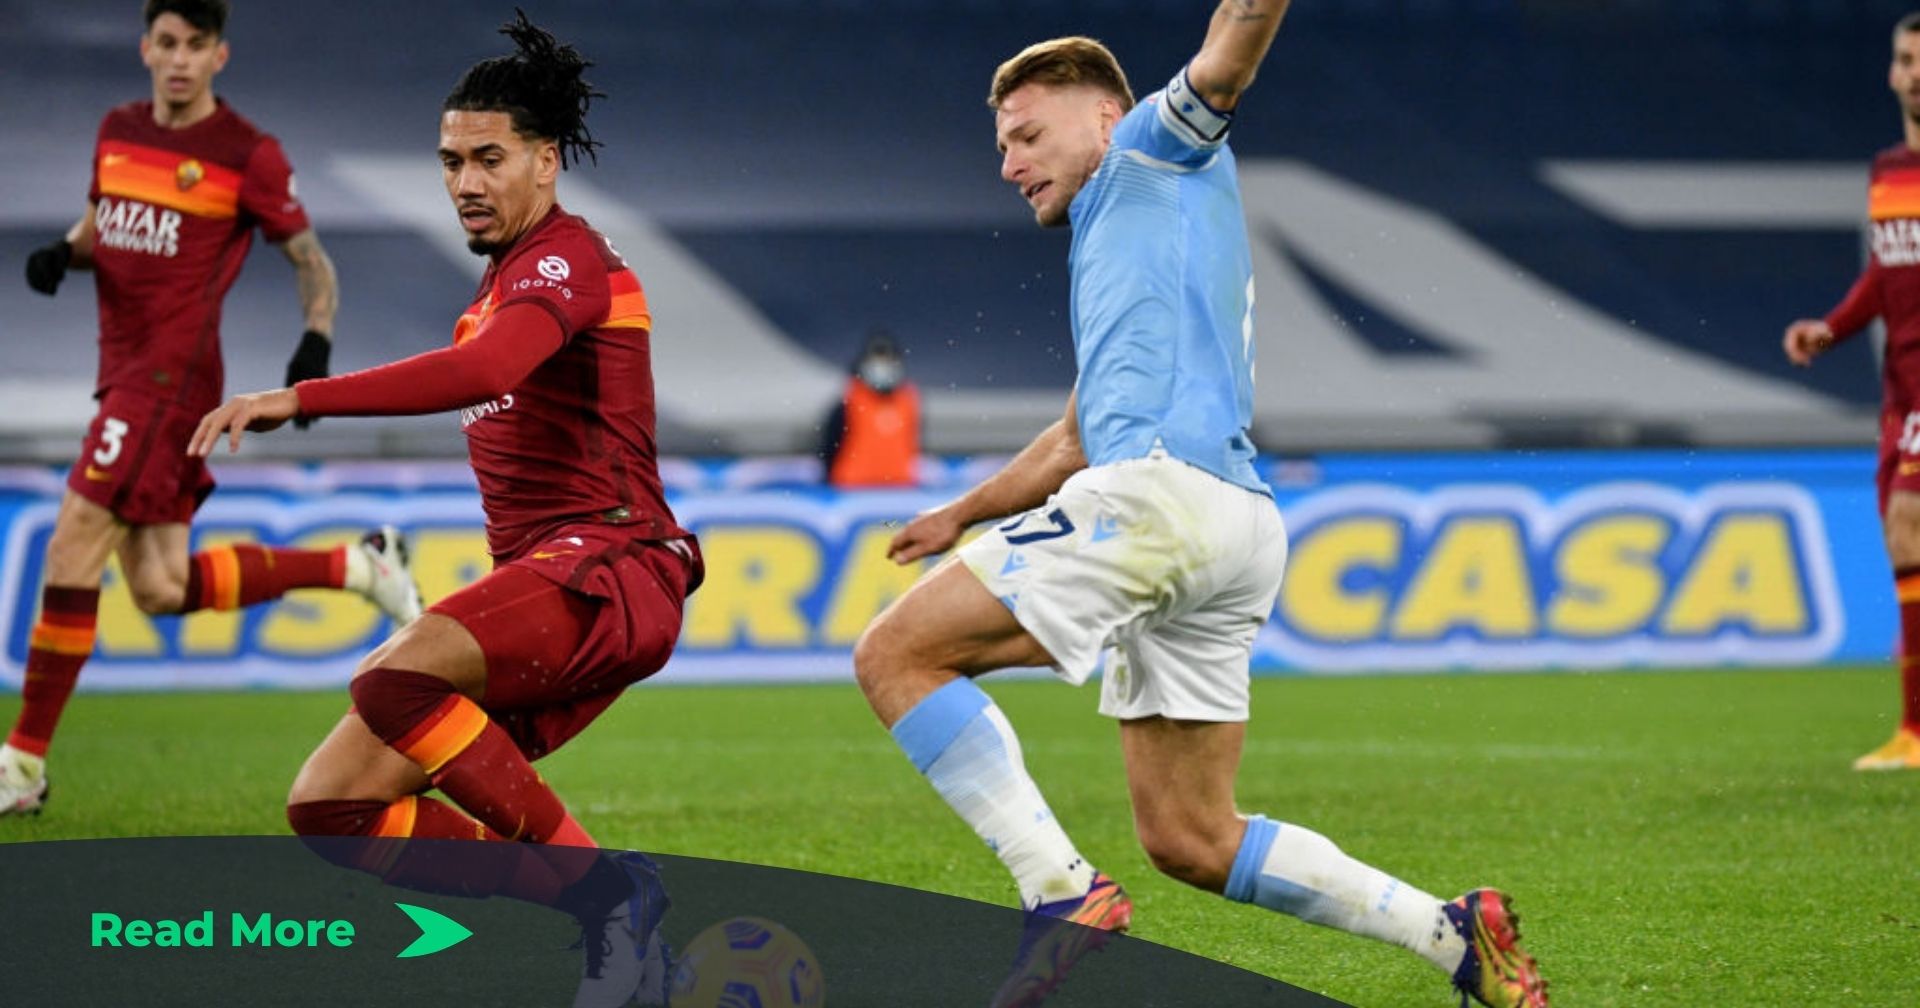 Lazio vs roma